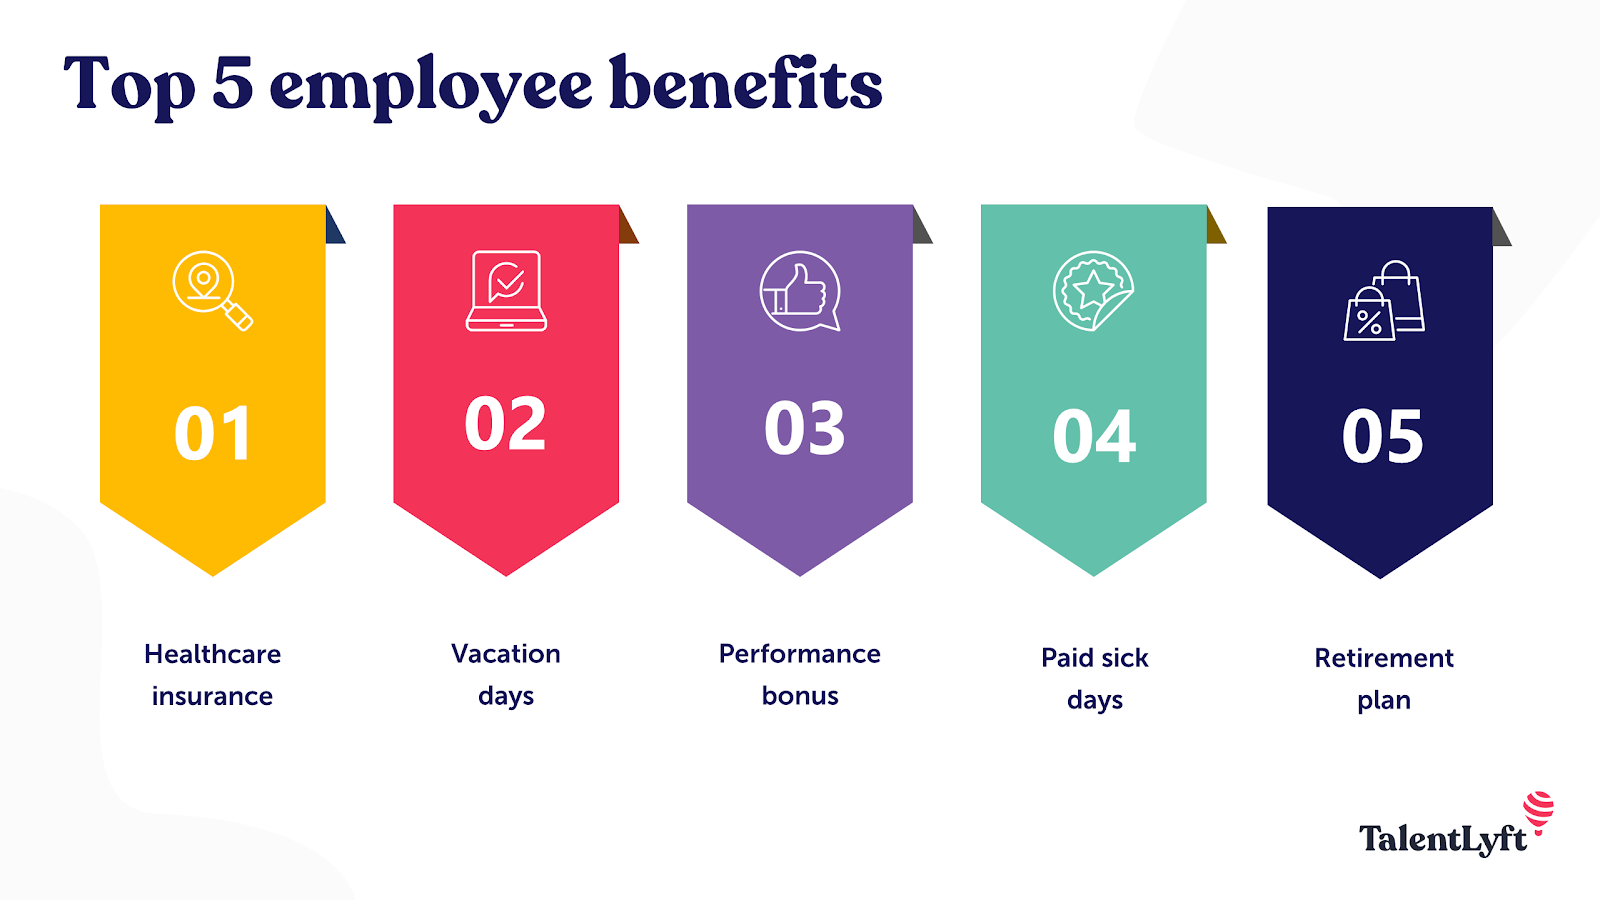 Top 5 employee benefits